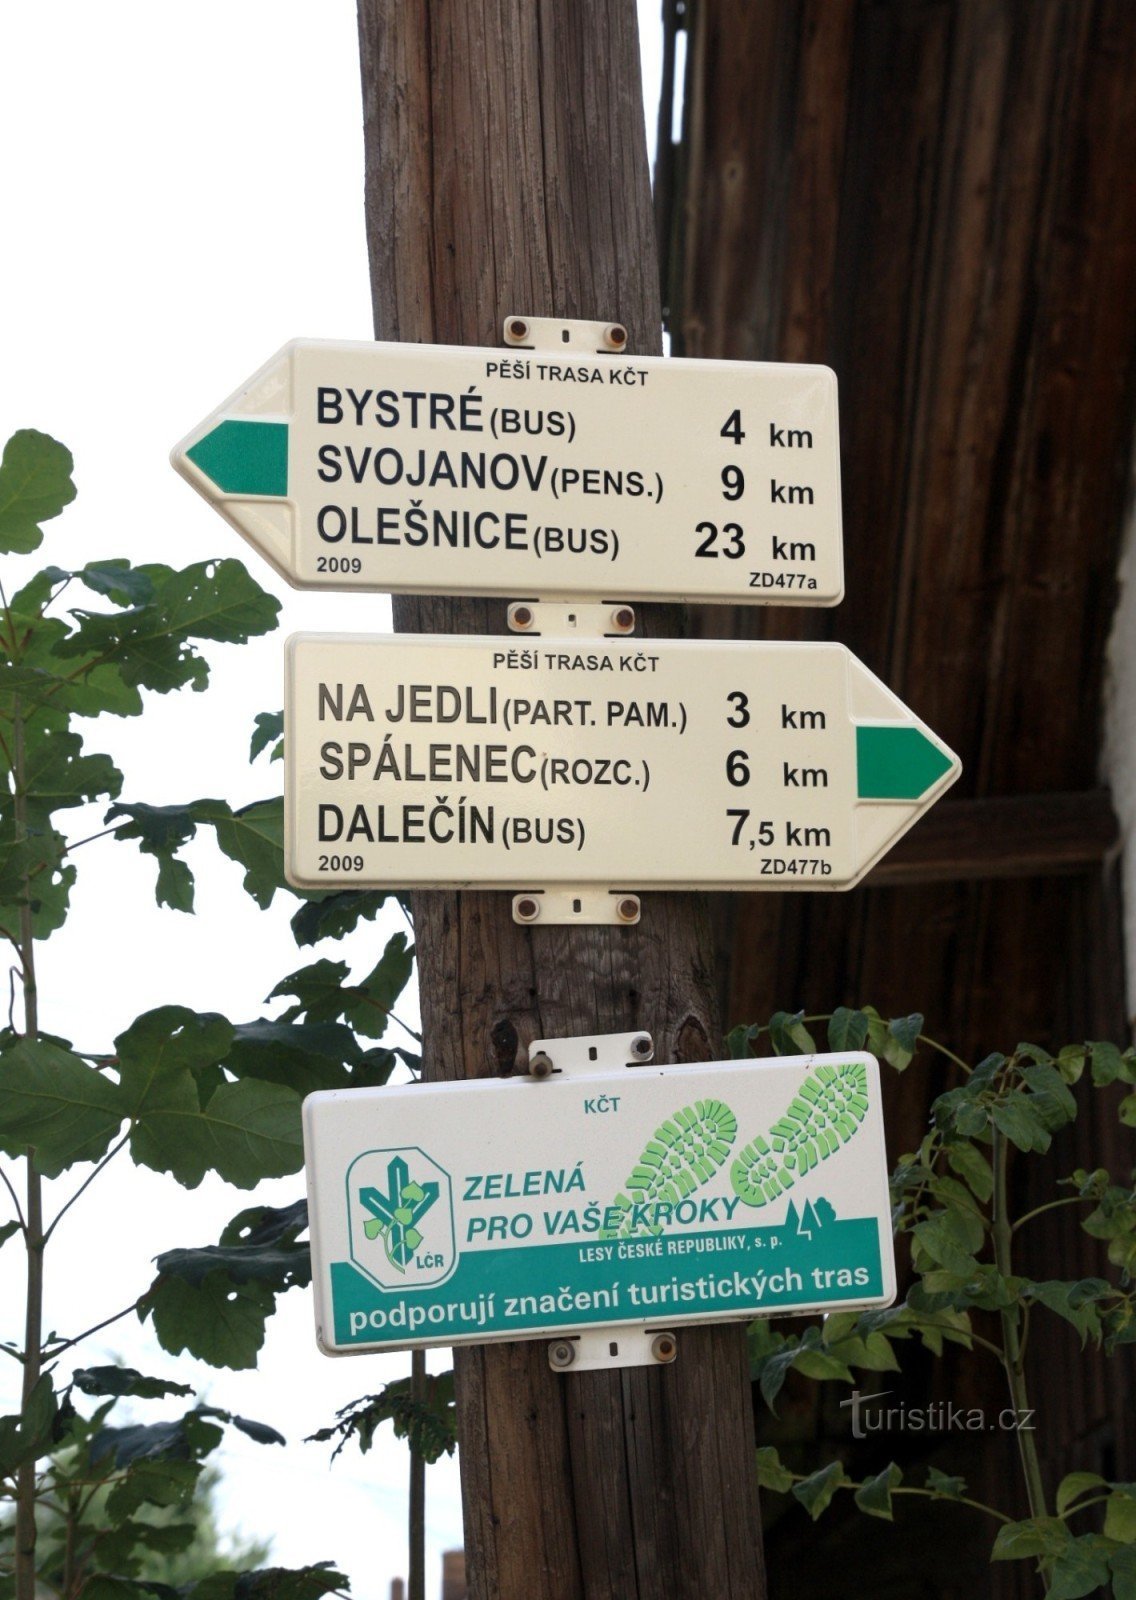 旅游十字路口 Sulkovec